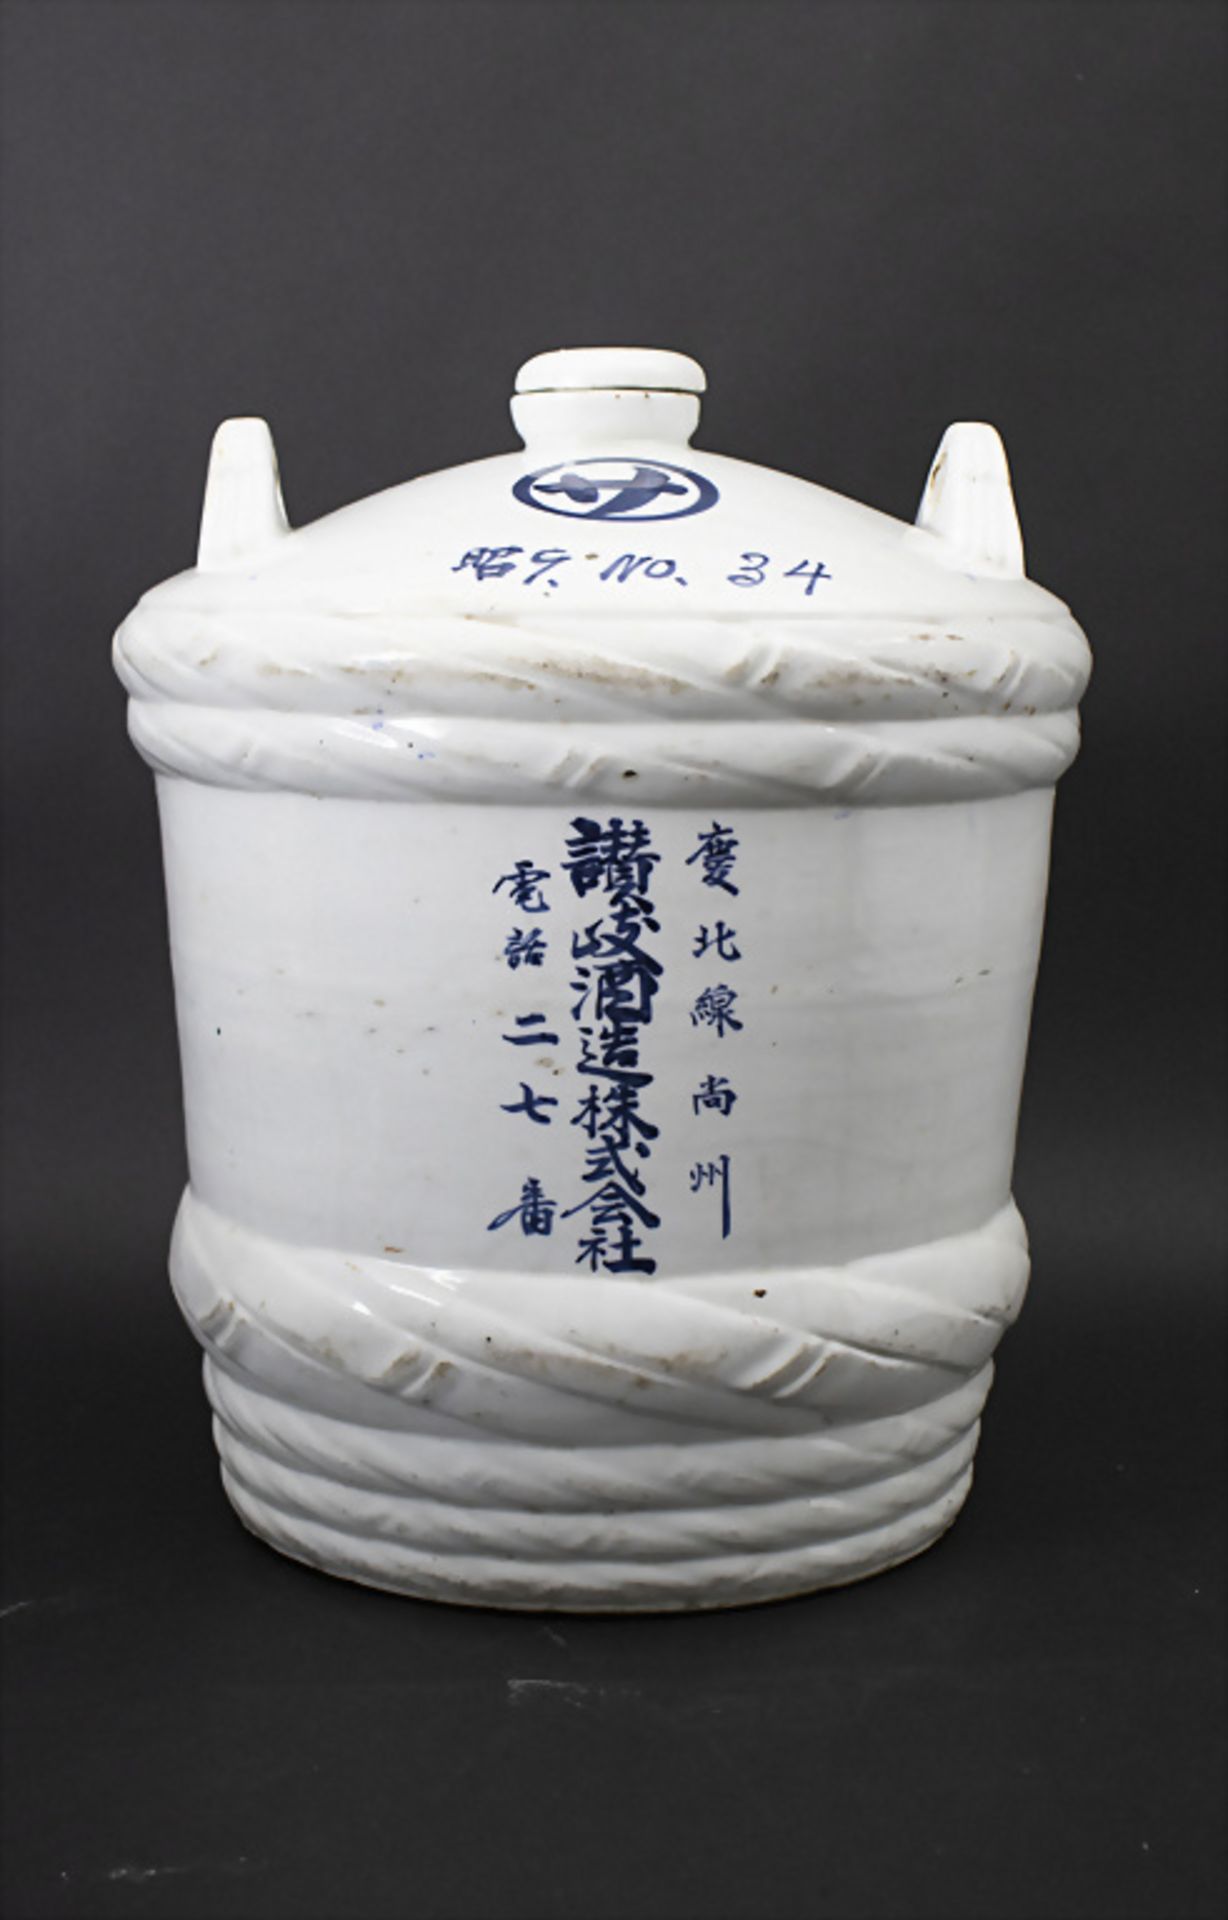 Sake-Behälter / Sake-Fass / A sake barrel, Japan, um 1900 - Image 3 of 5